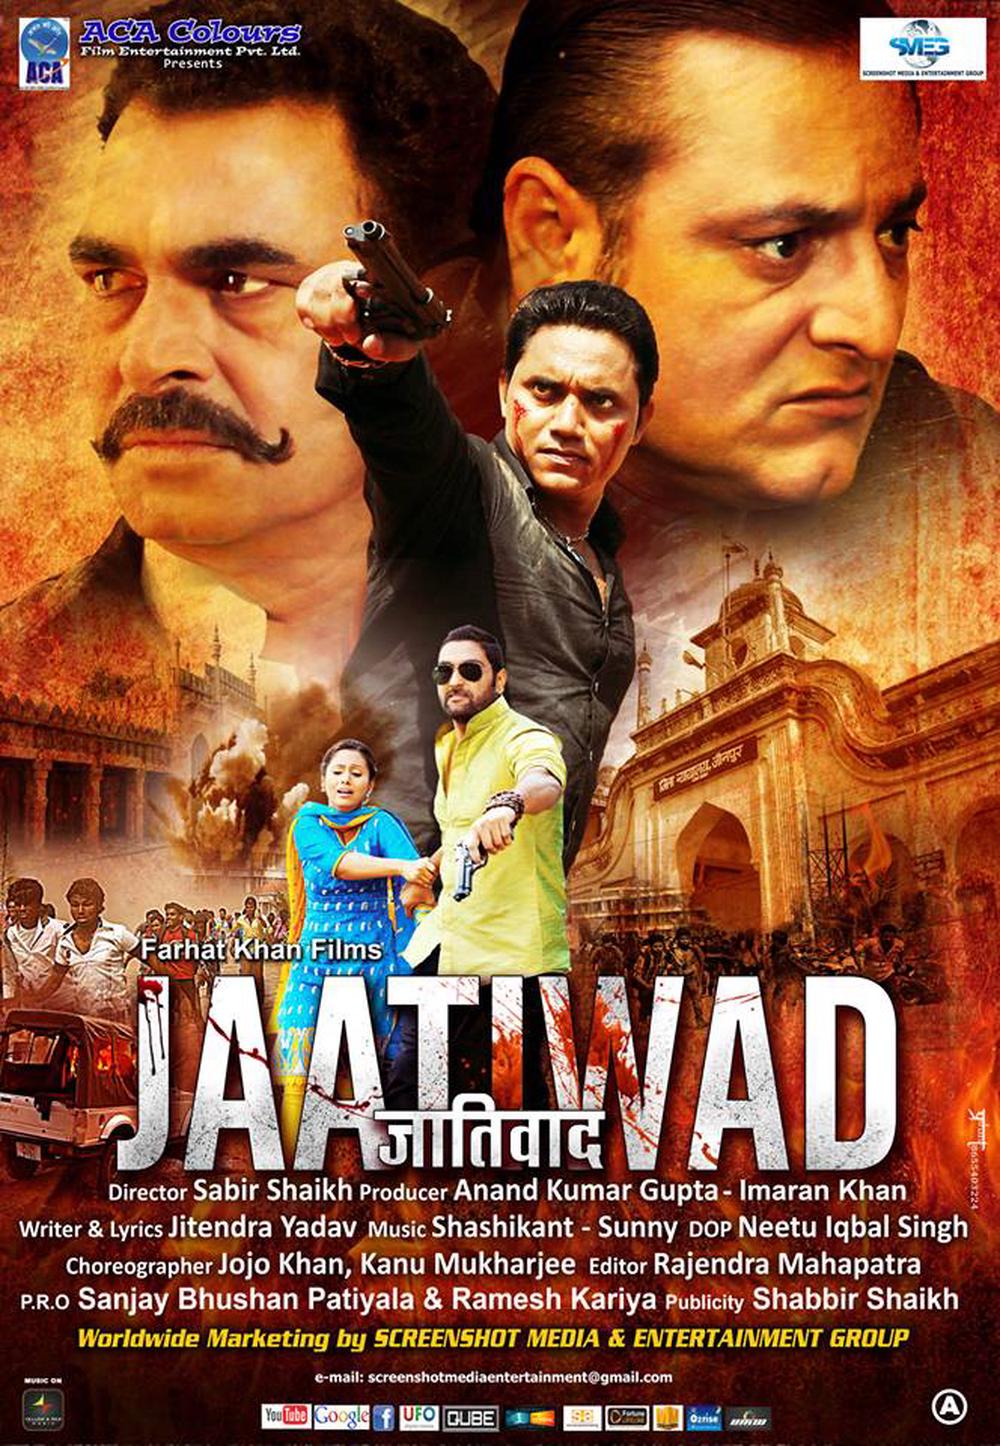 Jaatiwad  Movie Review